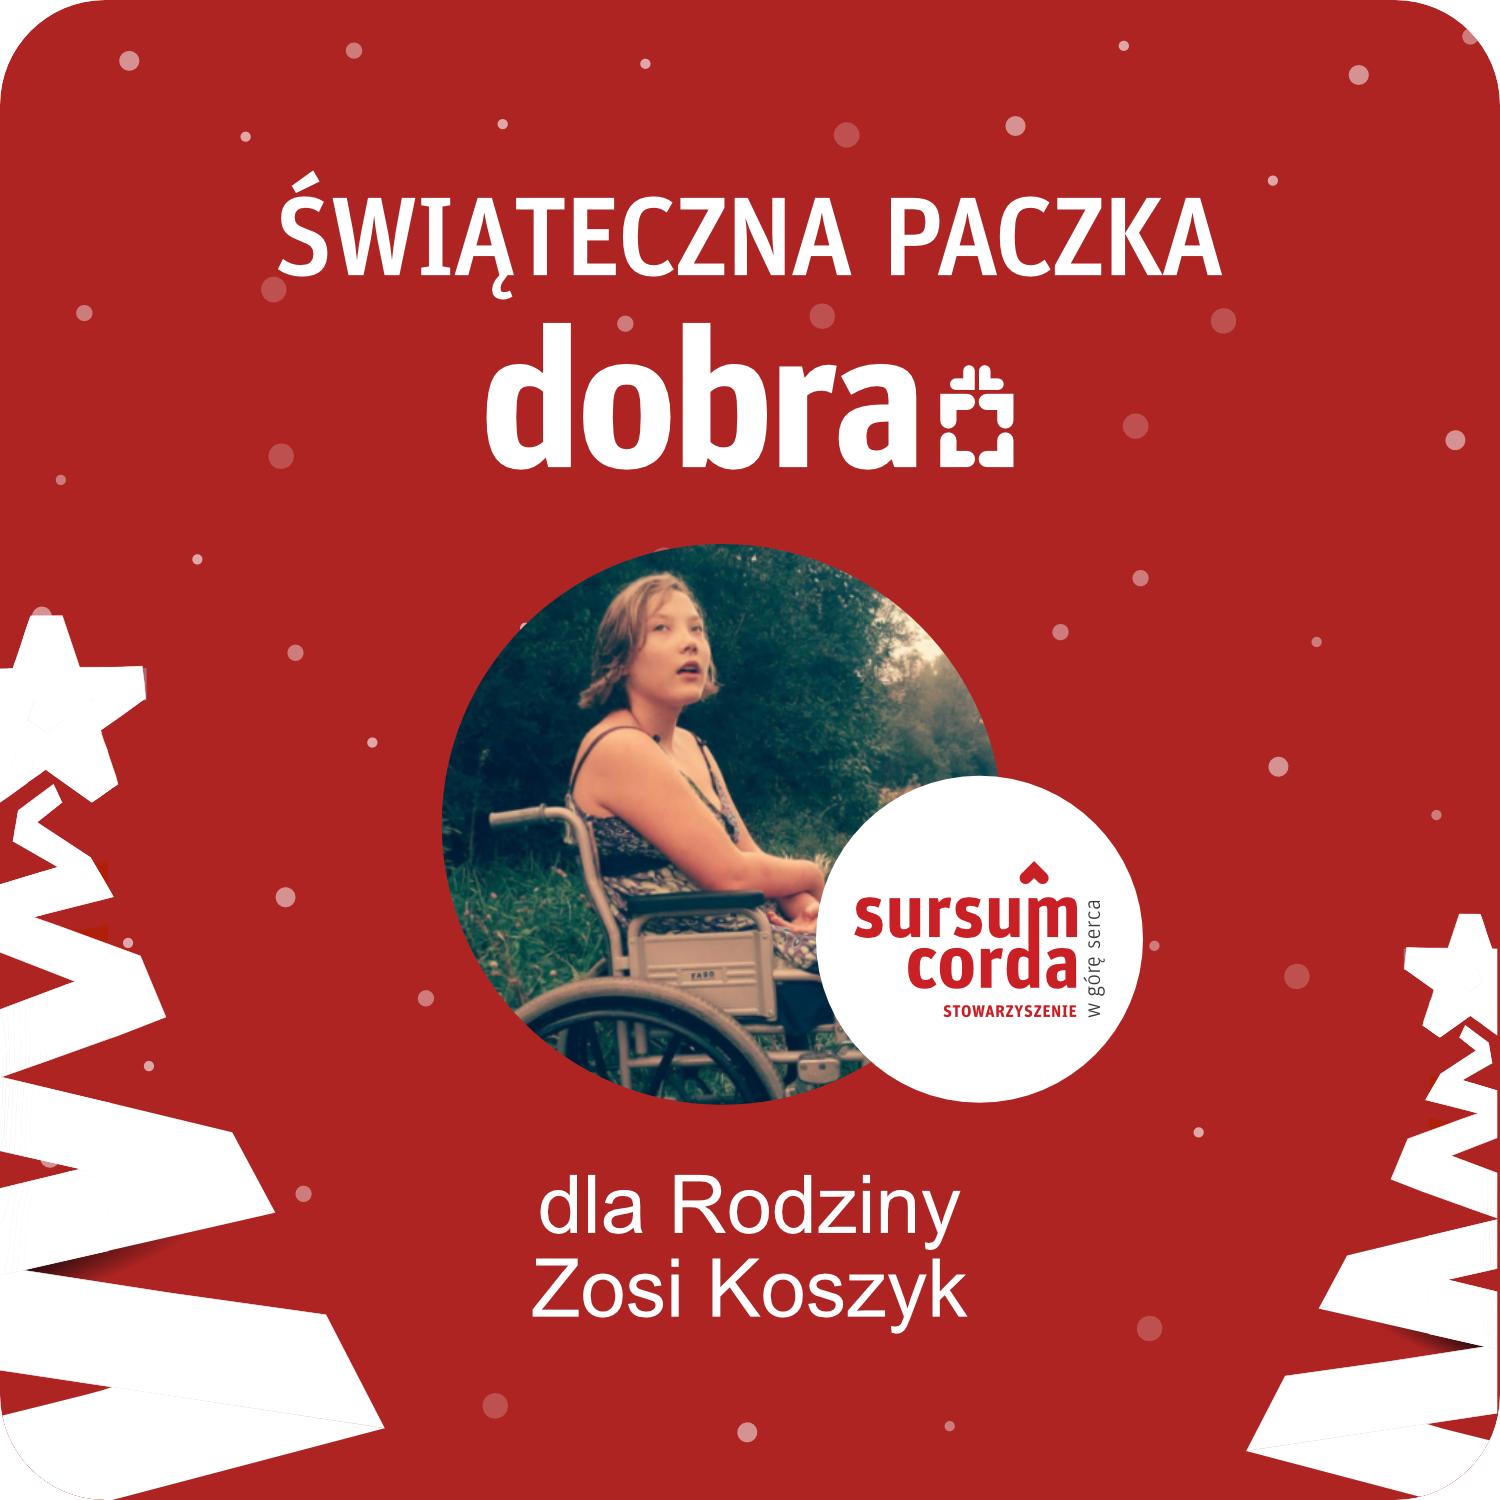 PACZKA DOBRA dla rodziny Zosi Koszyk